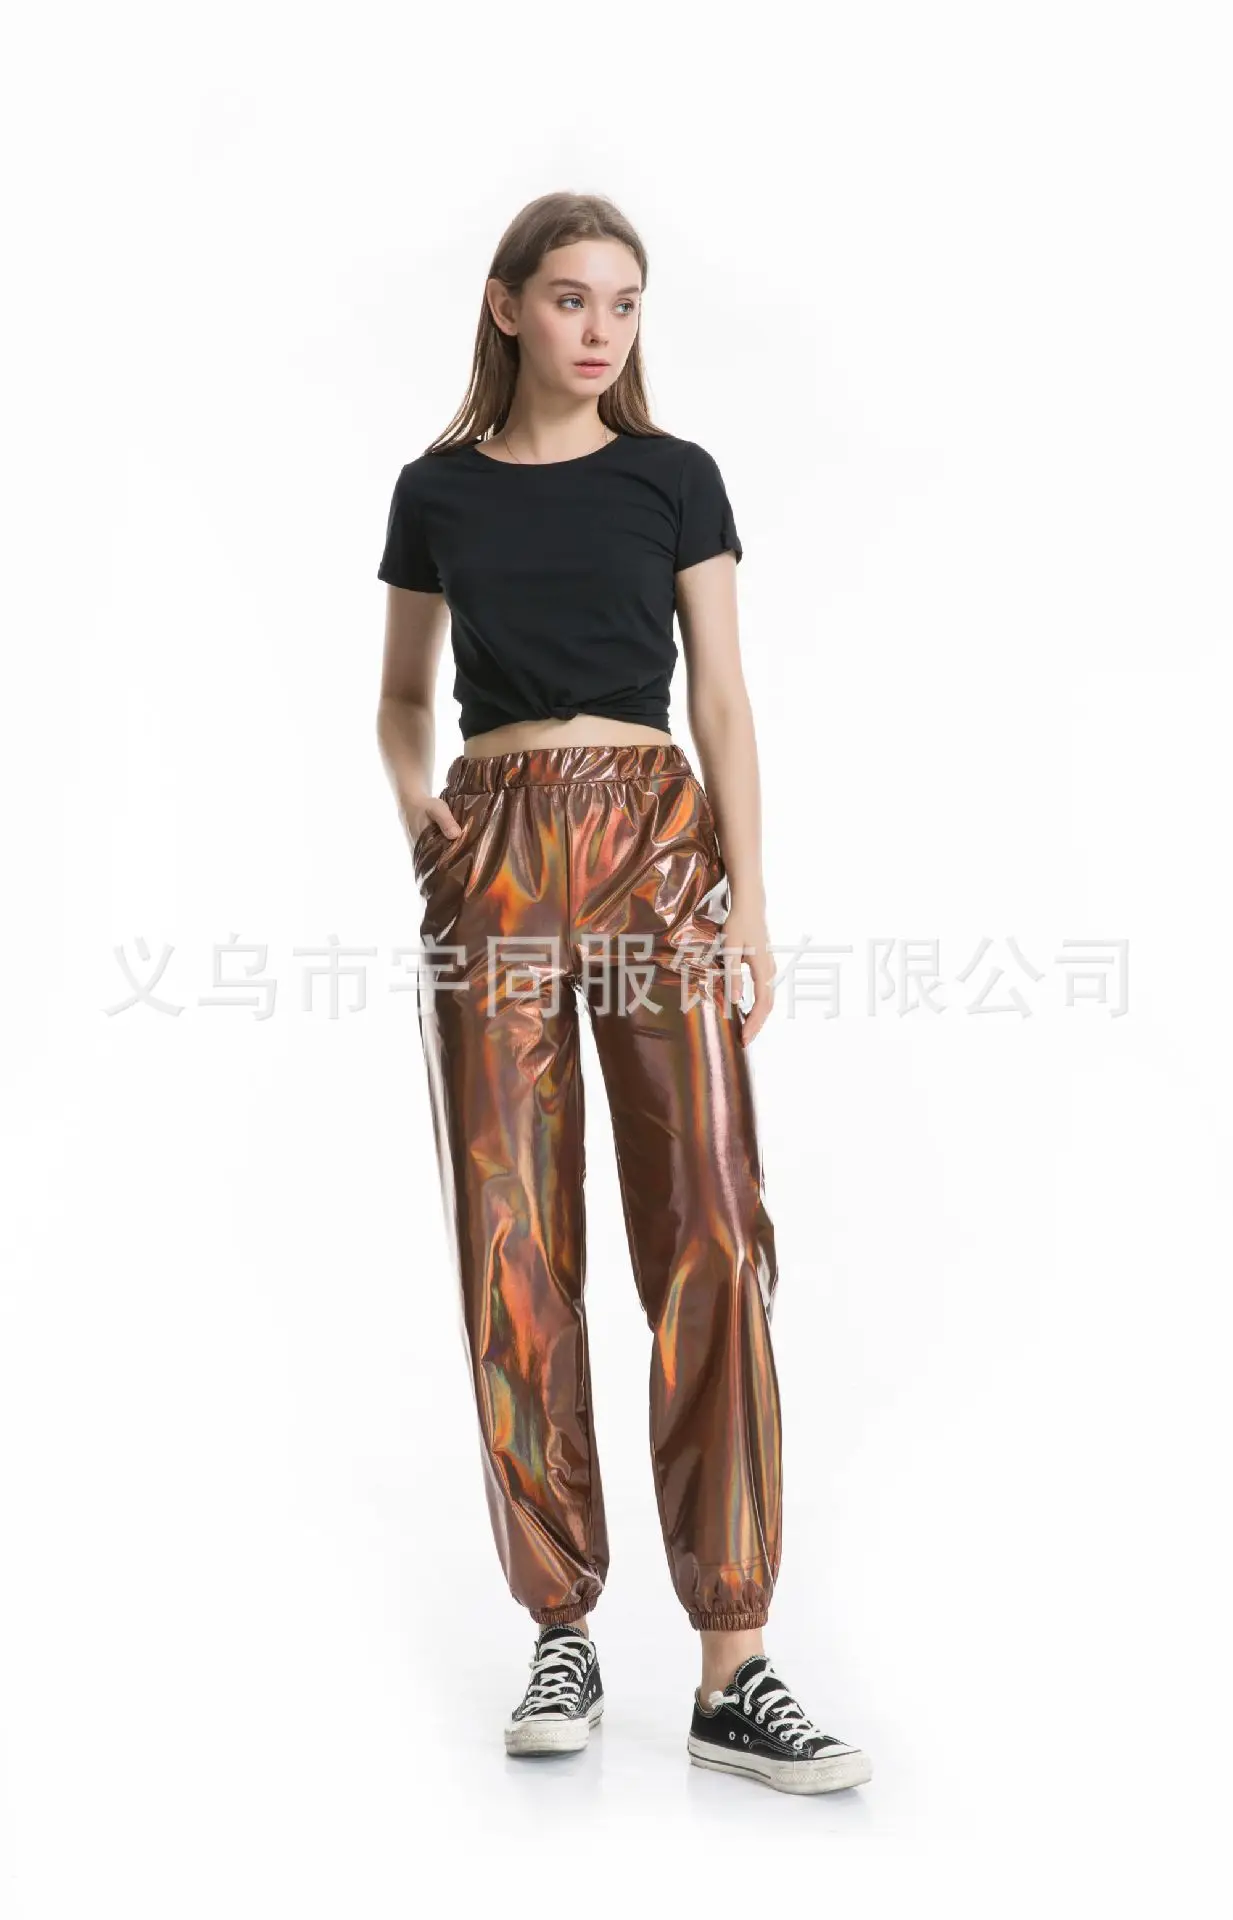 Хоучжоу спортивные штаны женские голографические брюки уличная хип-хоп повседневные брюки с высокой талией женские брюки хиппи больших размеров